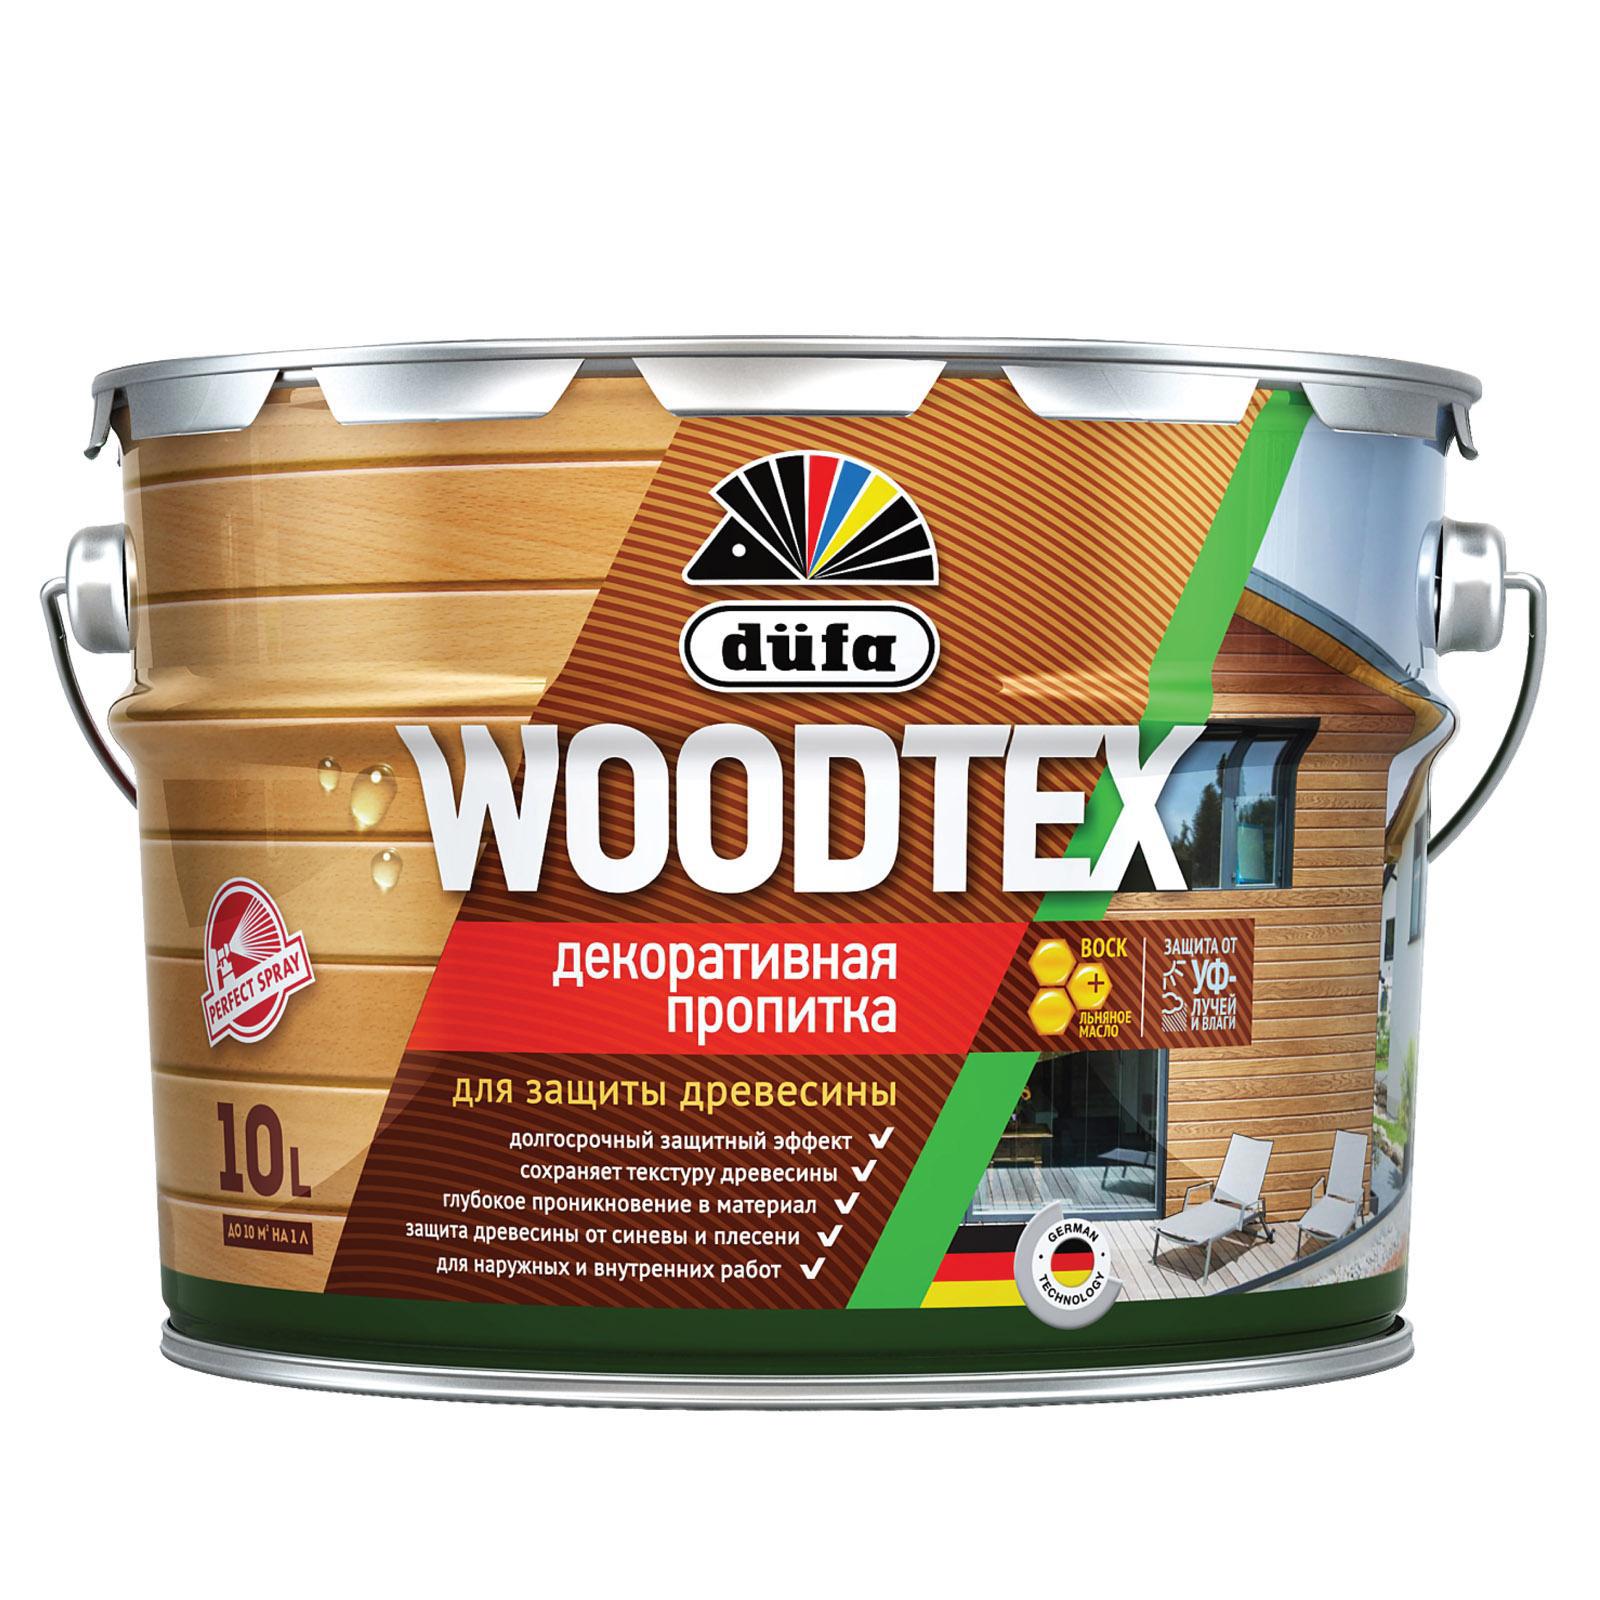 90194547 Пропитка декоративная для защиты древесины алкидная Woodtex дуб 10 л STLM-0128479 DUFA